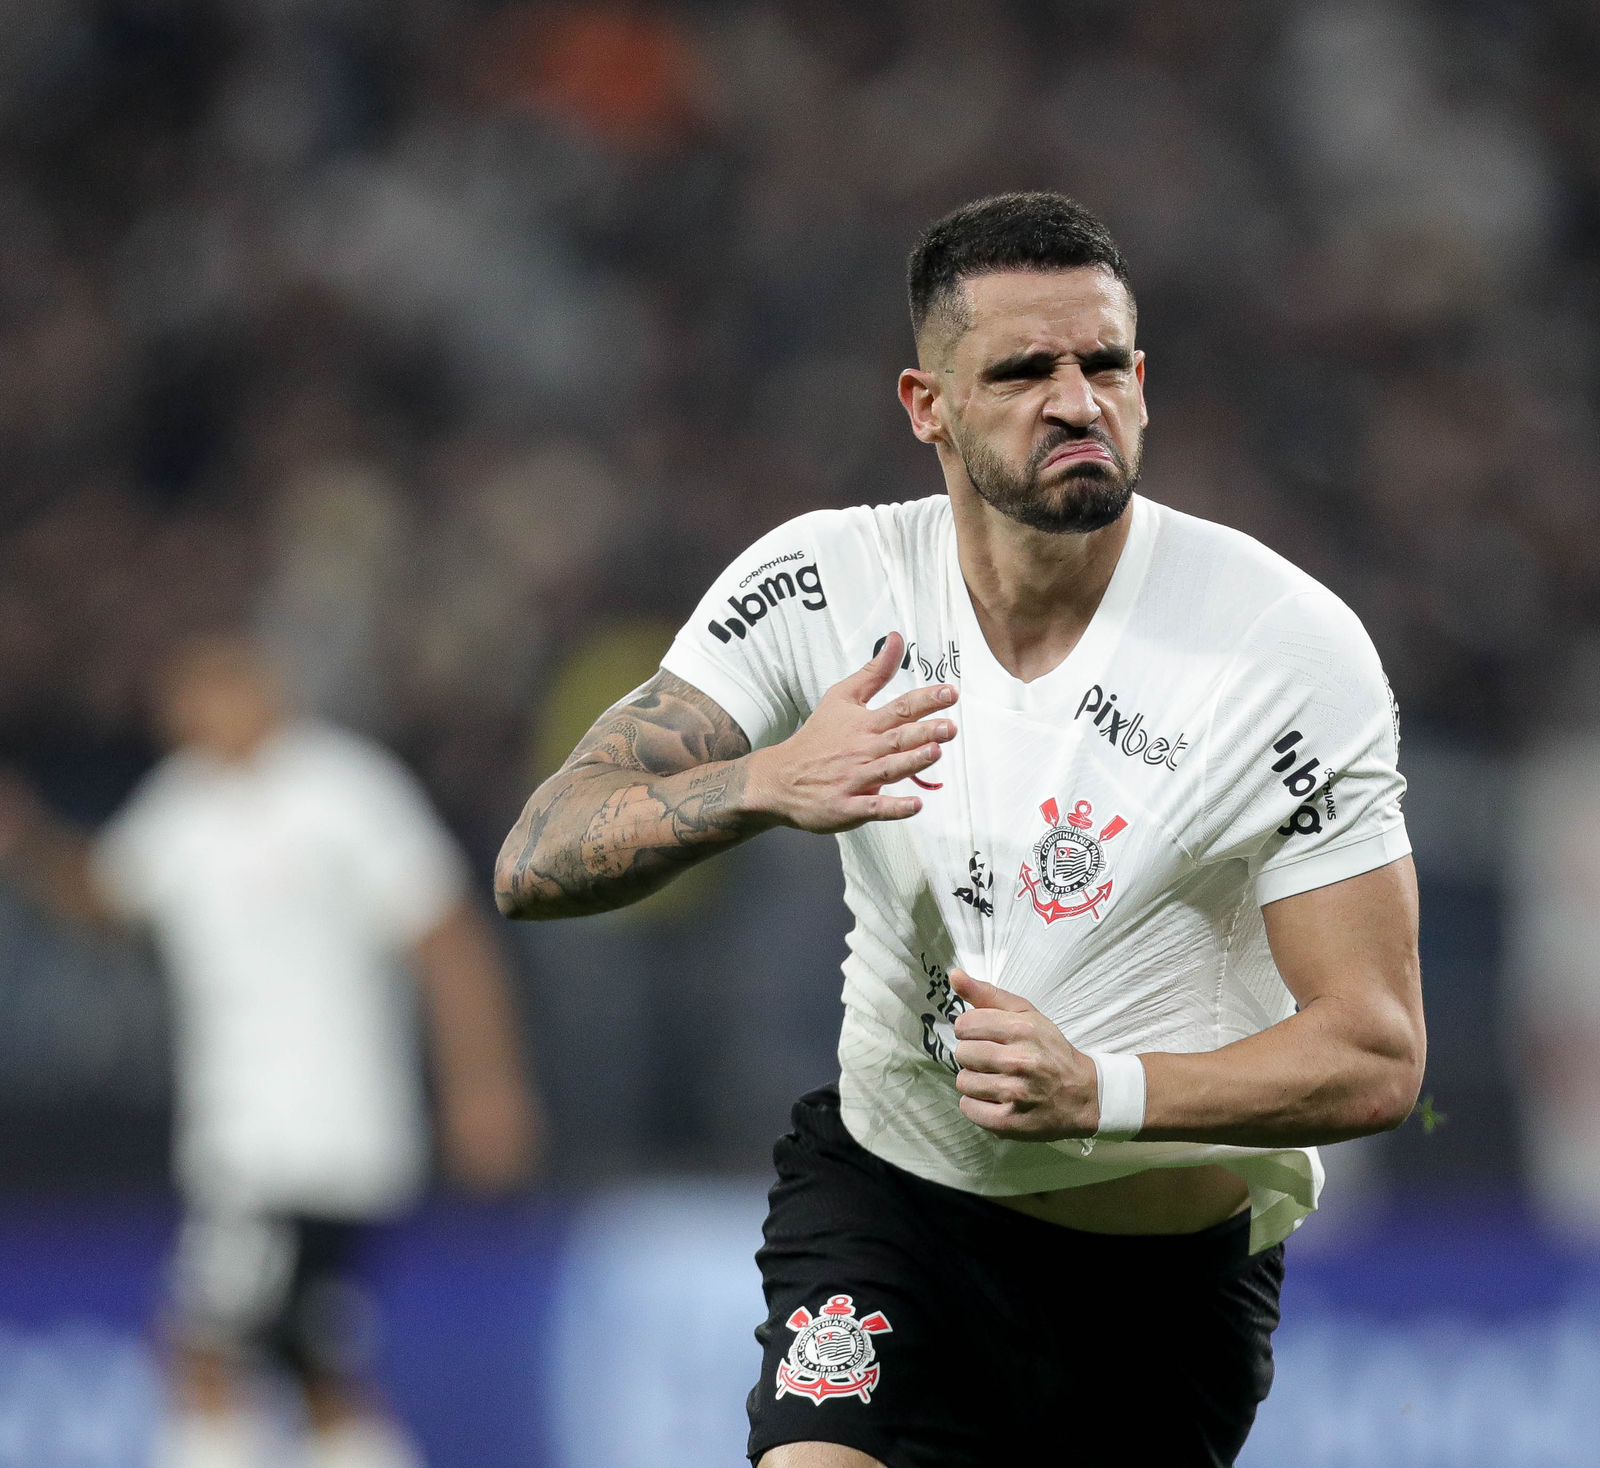 Empate no clássico faz o Corinthians alcançar marca IMPENSÁVEL no